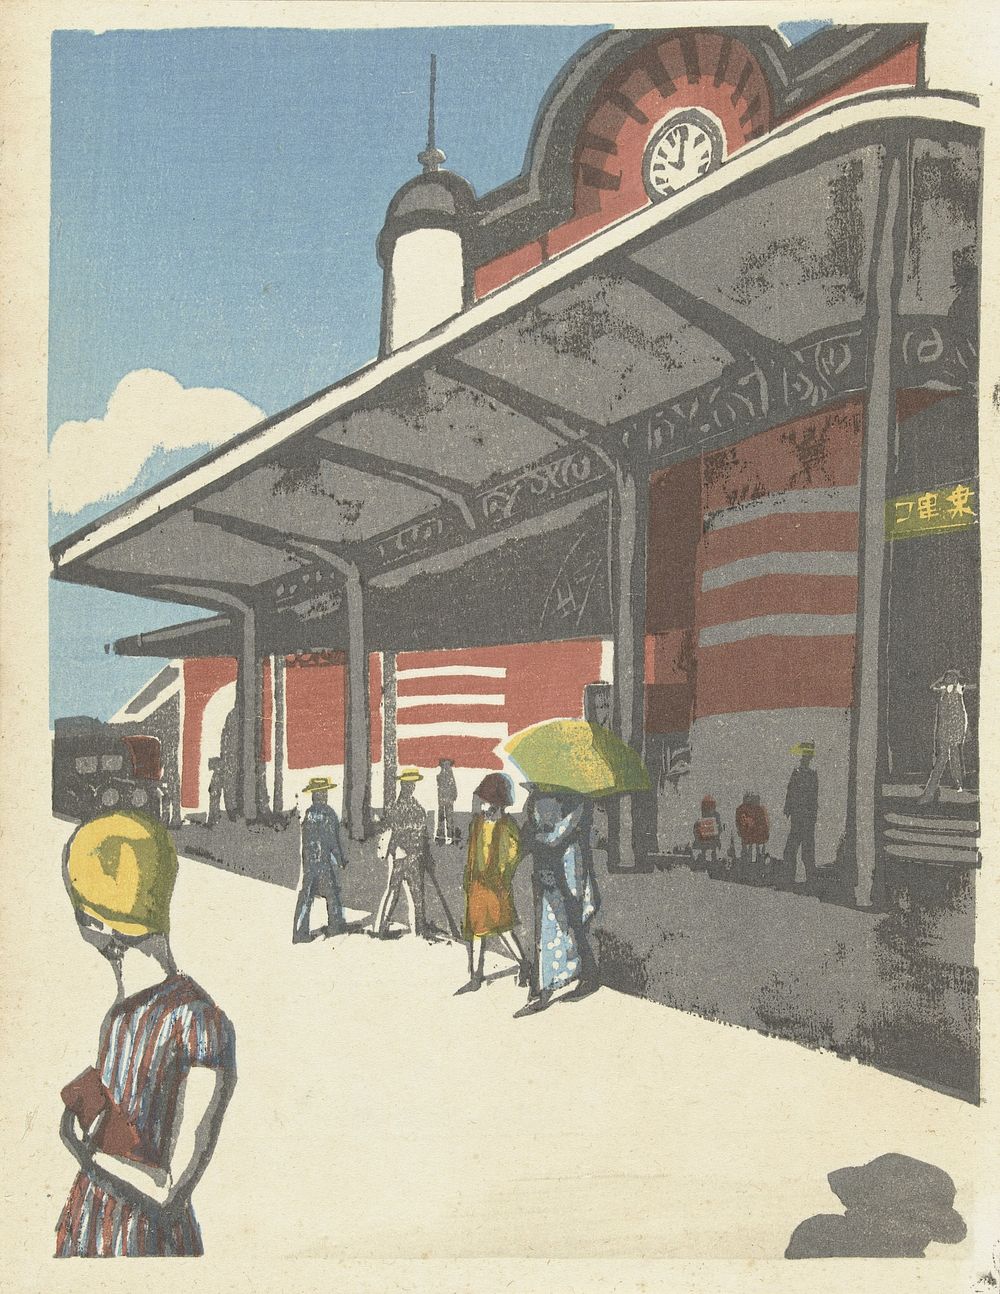 Tokyo Station (1945) by Onchi Kōshirō, Hirai Koichi and Uemura Masuro